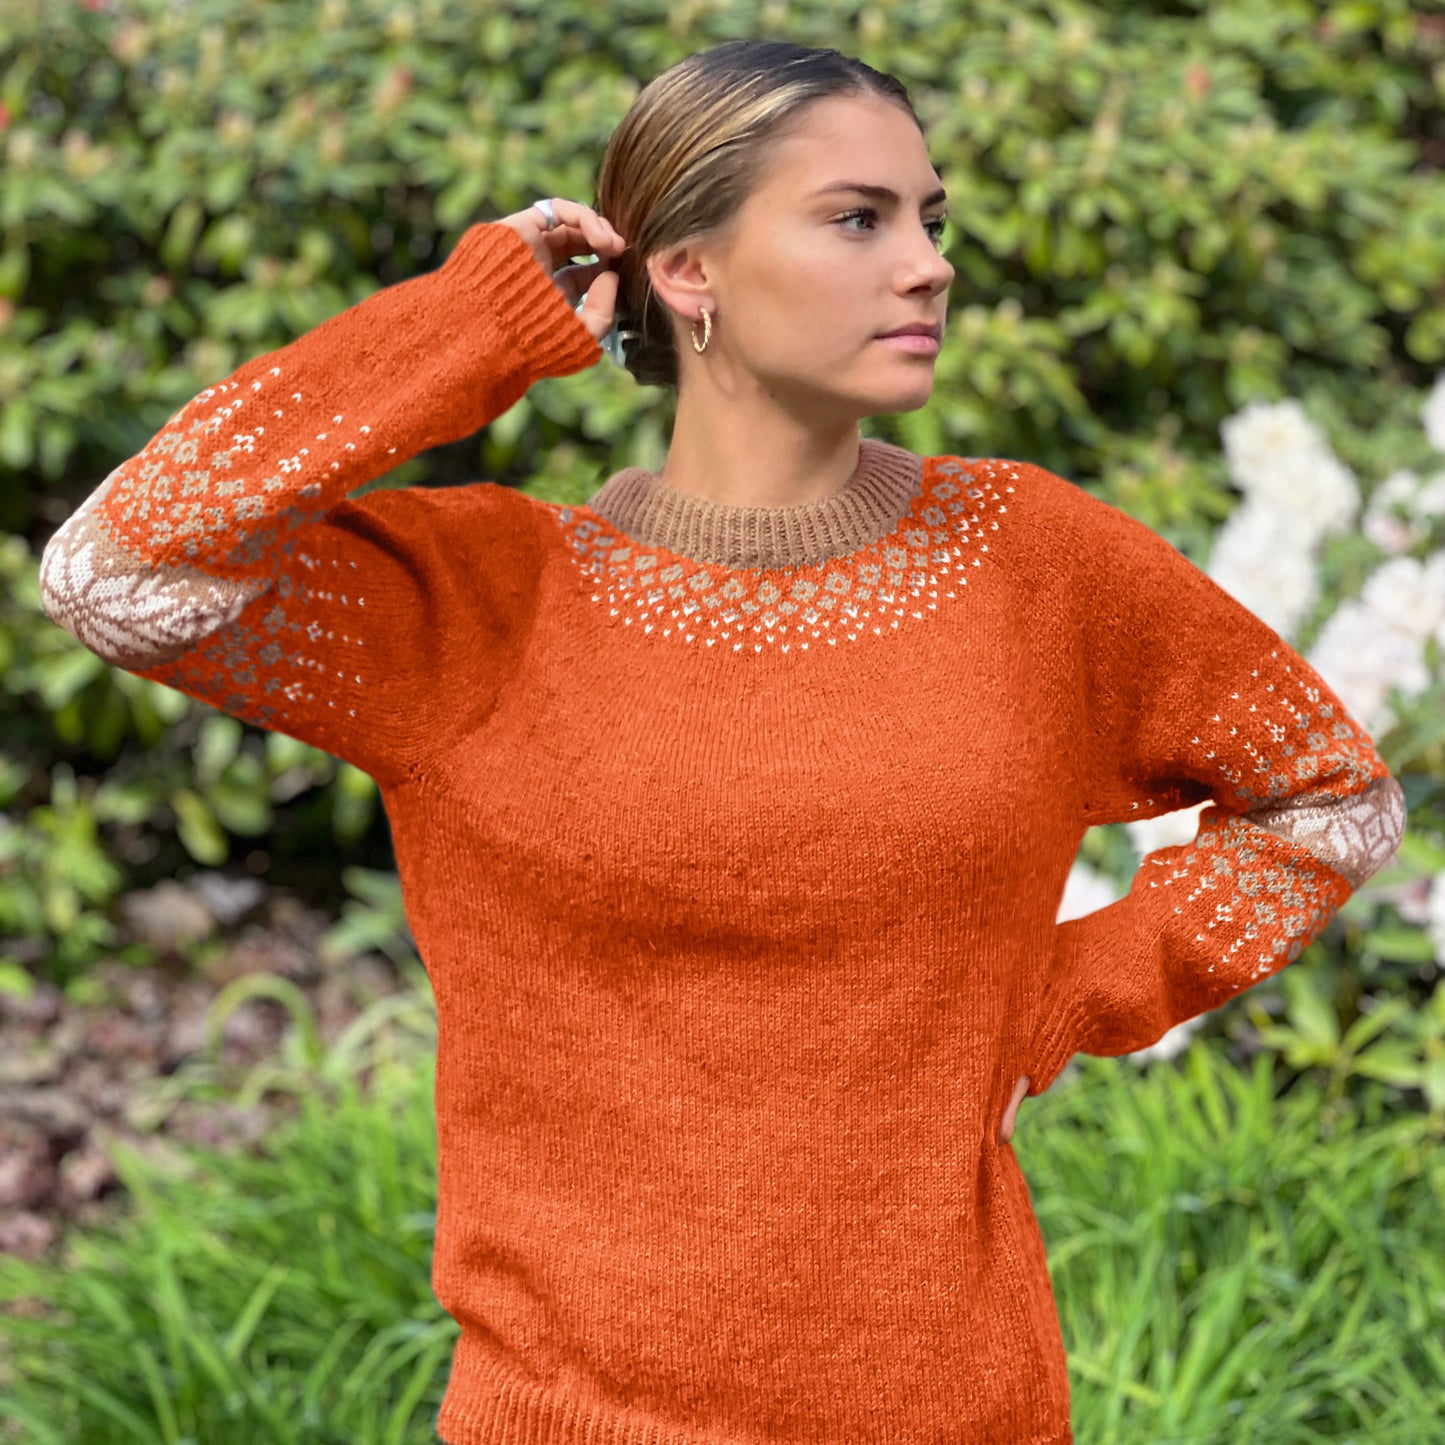 Strikk The Look: Erfjord-genseren oransje og kamel